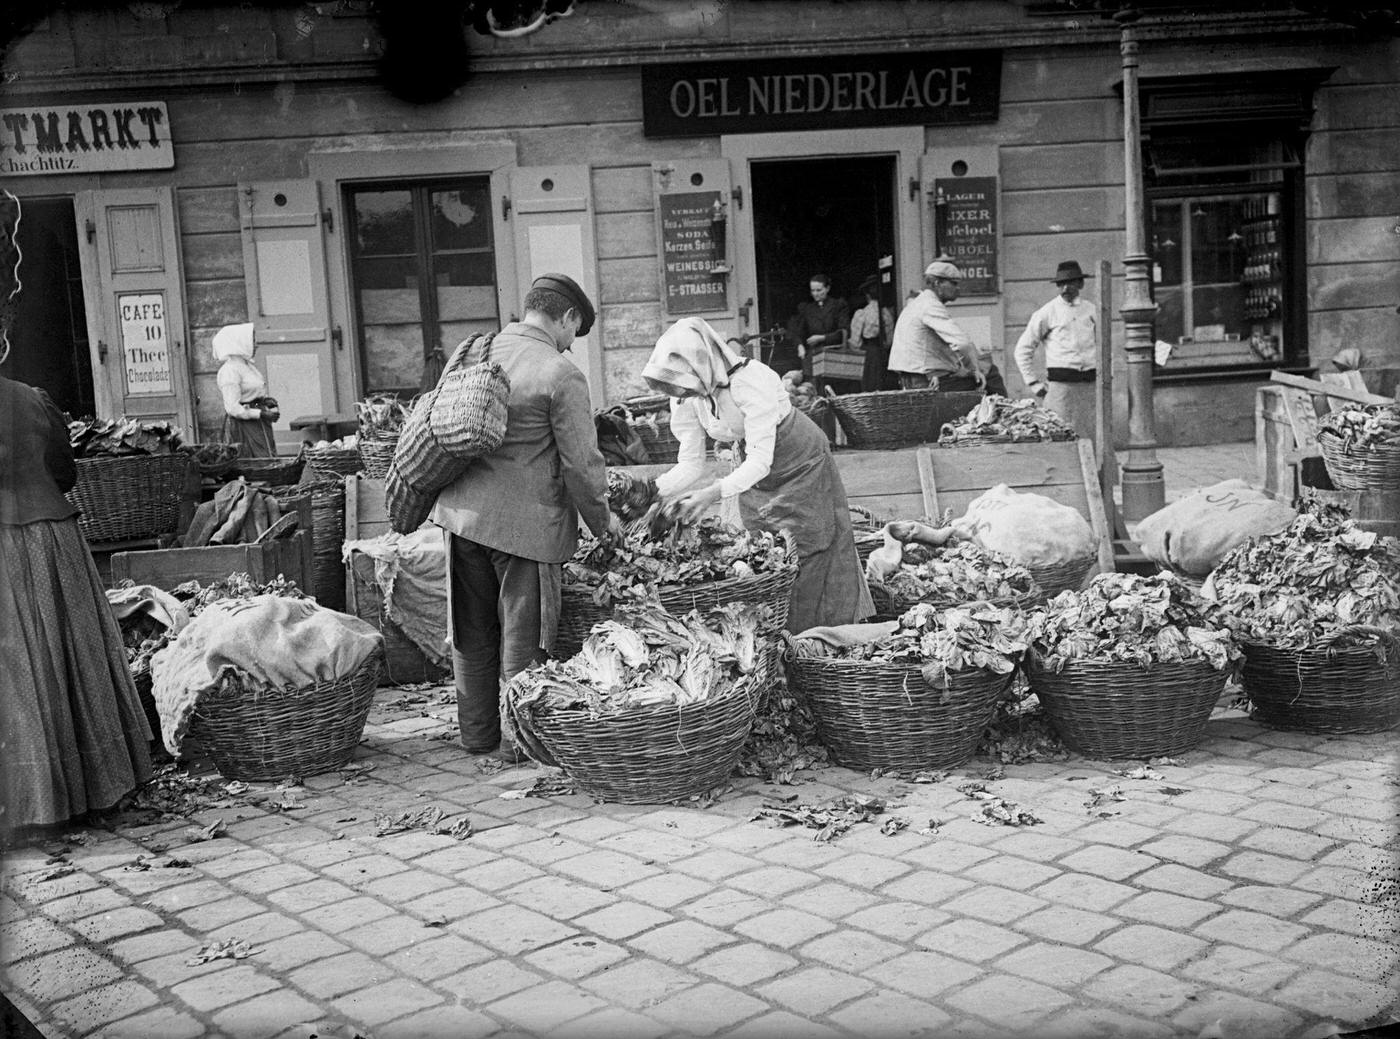 A greengrocer in Vienna, Around 1900